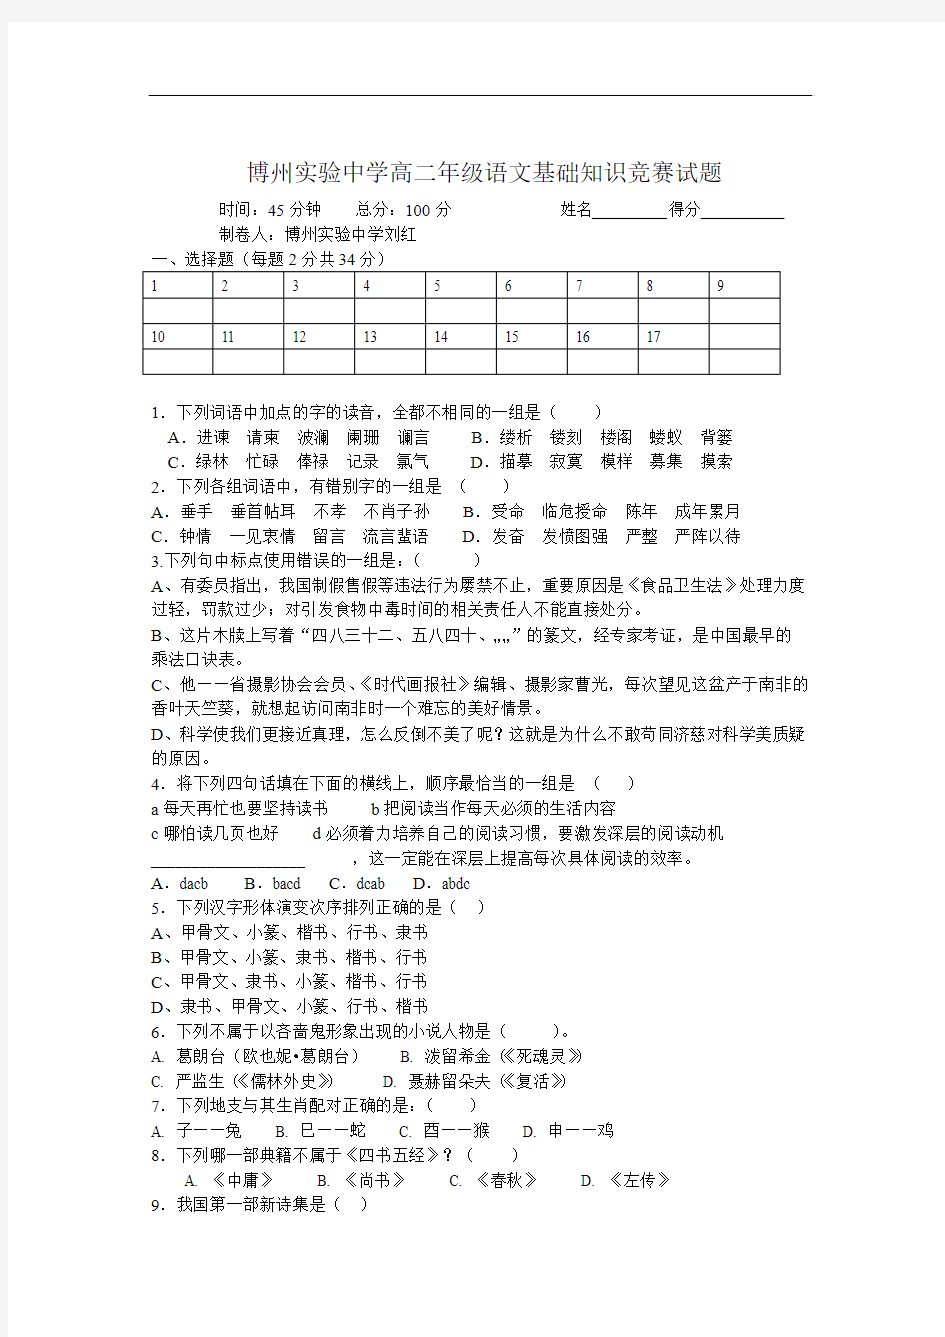 高二语文试卷博州实验中学高二年级语文基础知识竞赛试题457